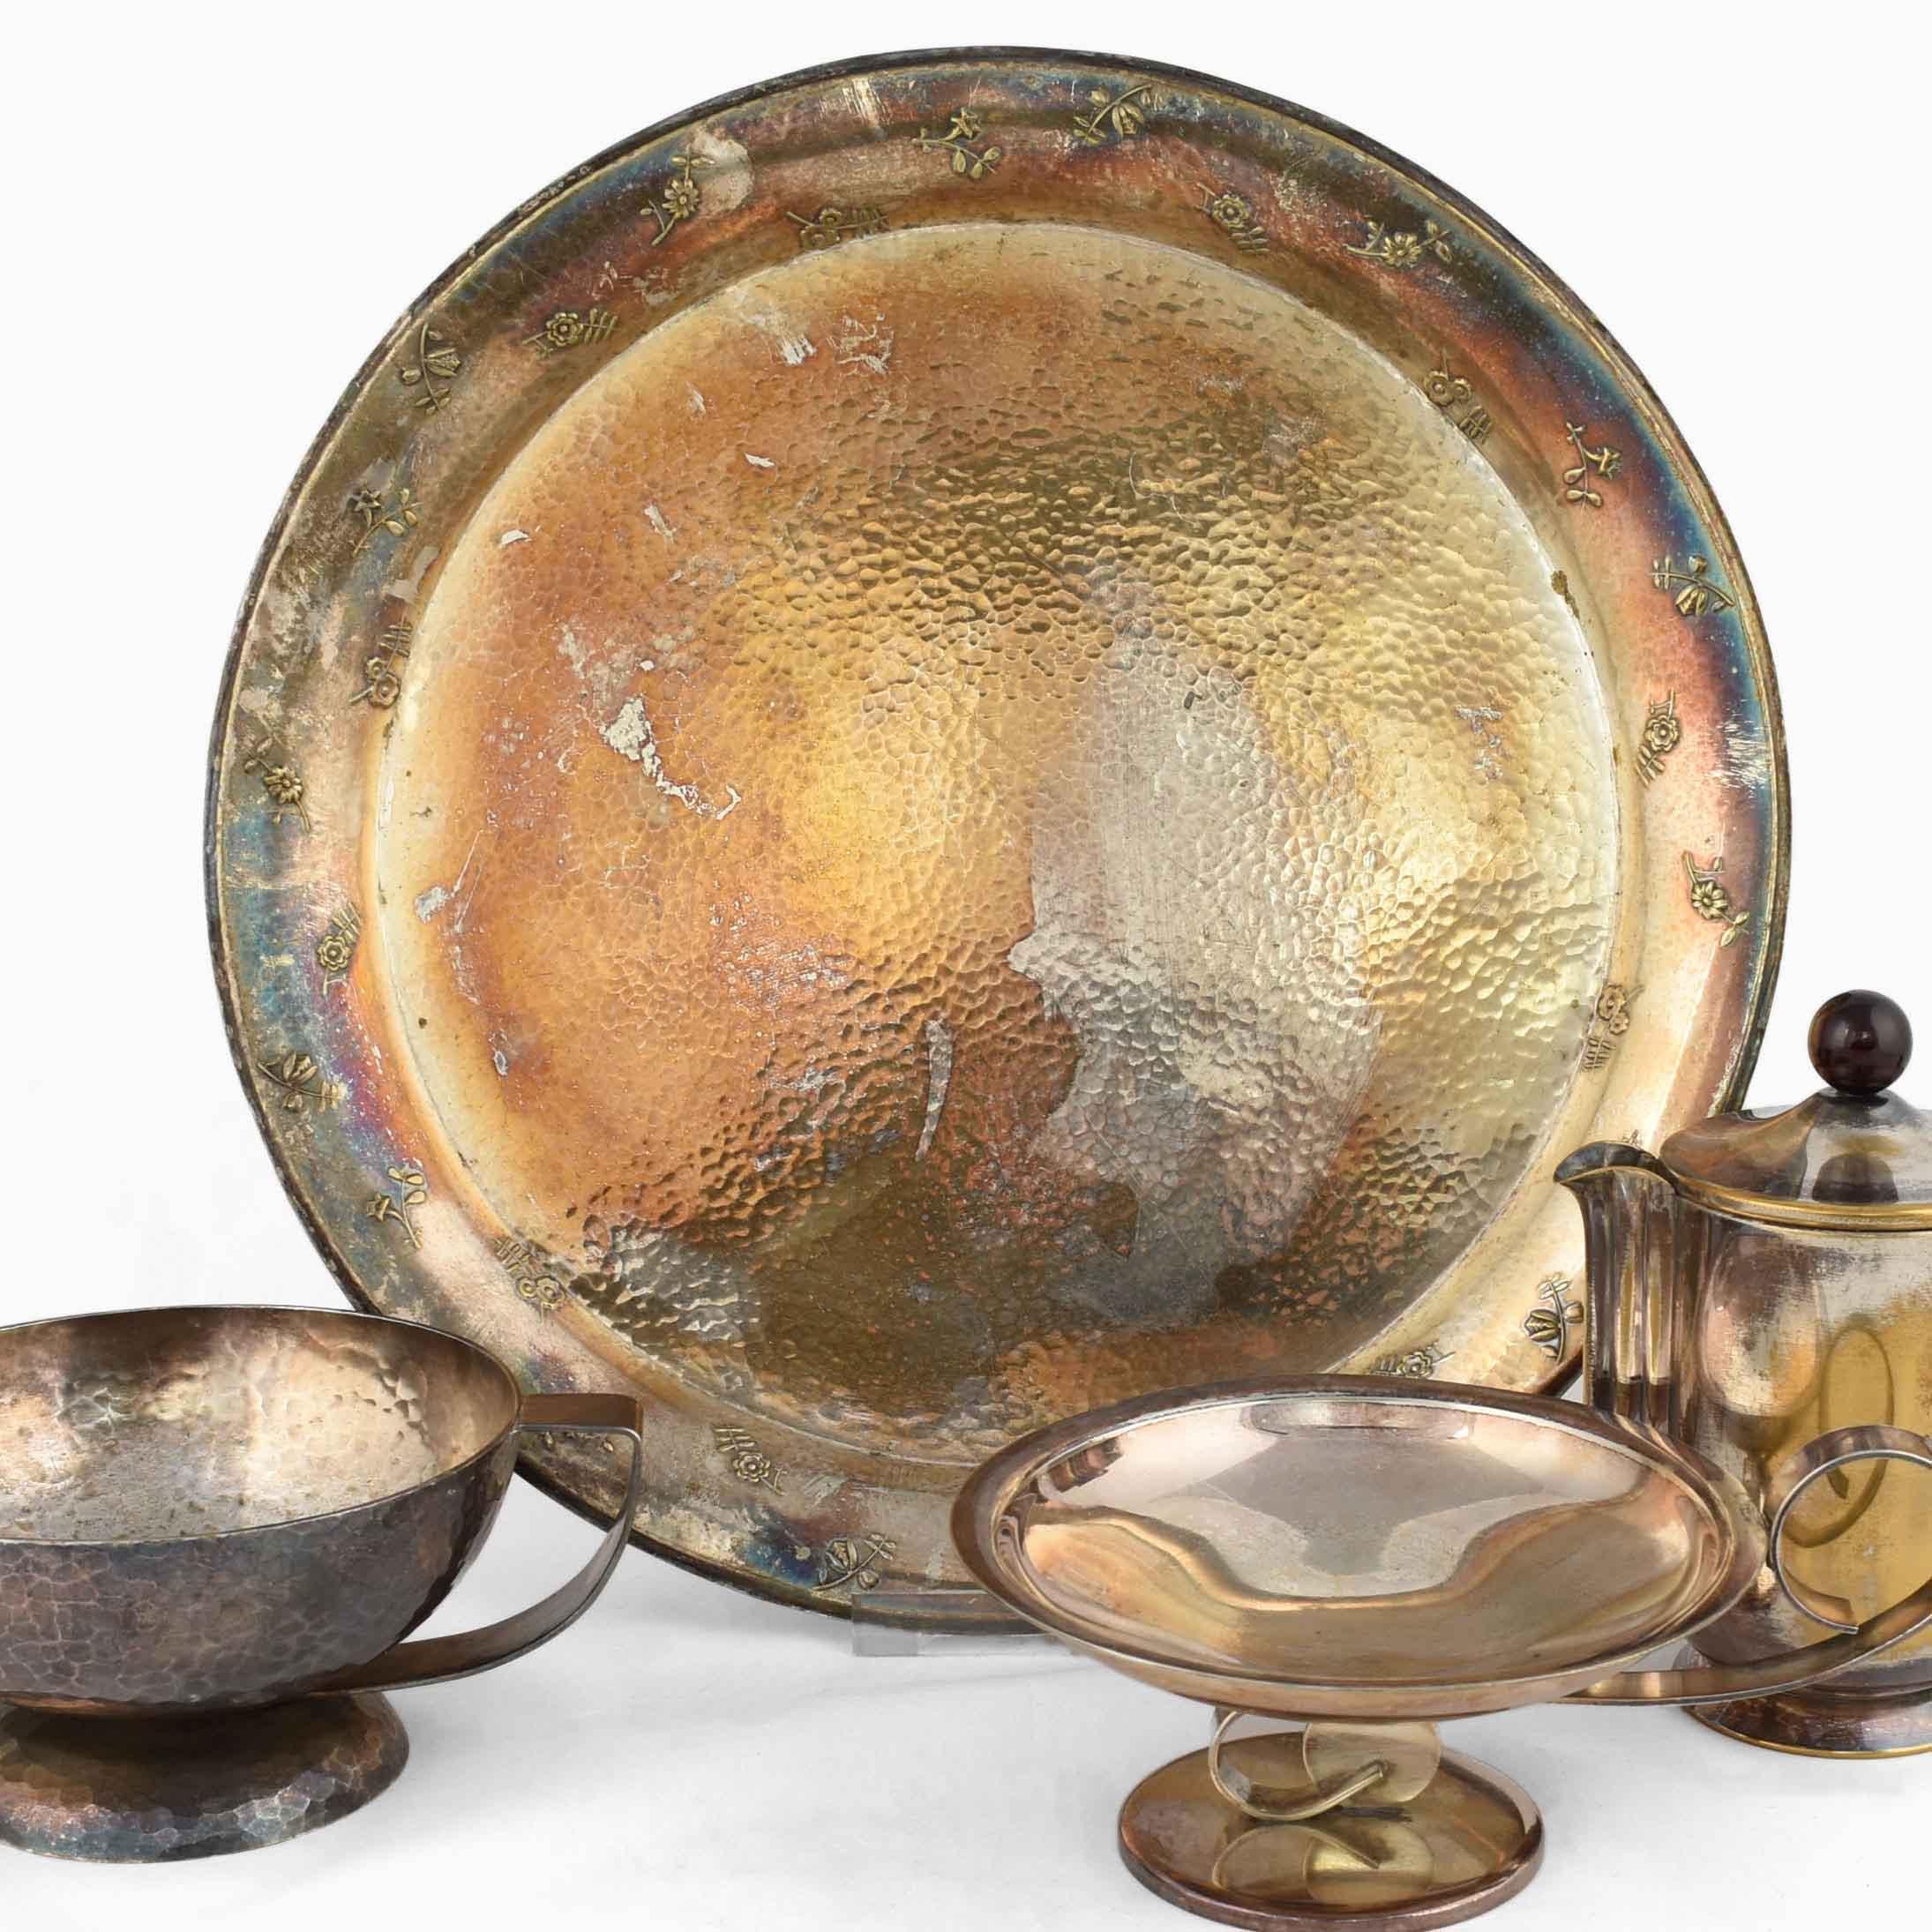 Mixed Silver Lot ist eine originelle Gruppe von dekorativen Art Déco-Objekten, die von verschiedenen Künstlern in den 1920er Jahren realisiert wurden. 

Die Gruppe umfasst vier Stücke: eine Henkelschale von Georg Nilsson (H. 7 cm), eine kleinere